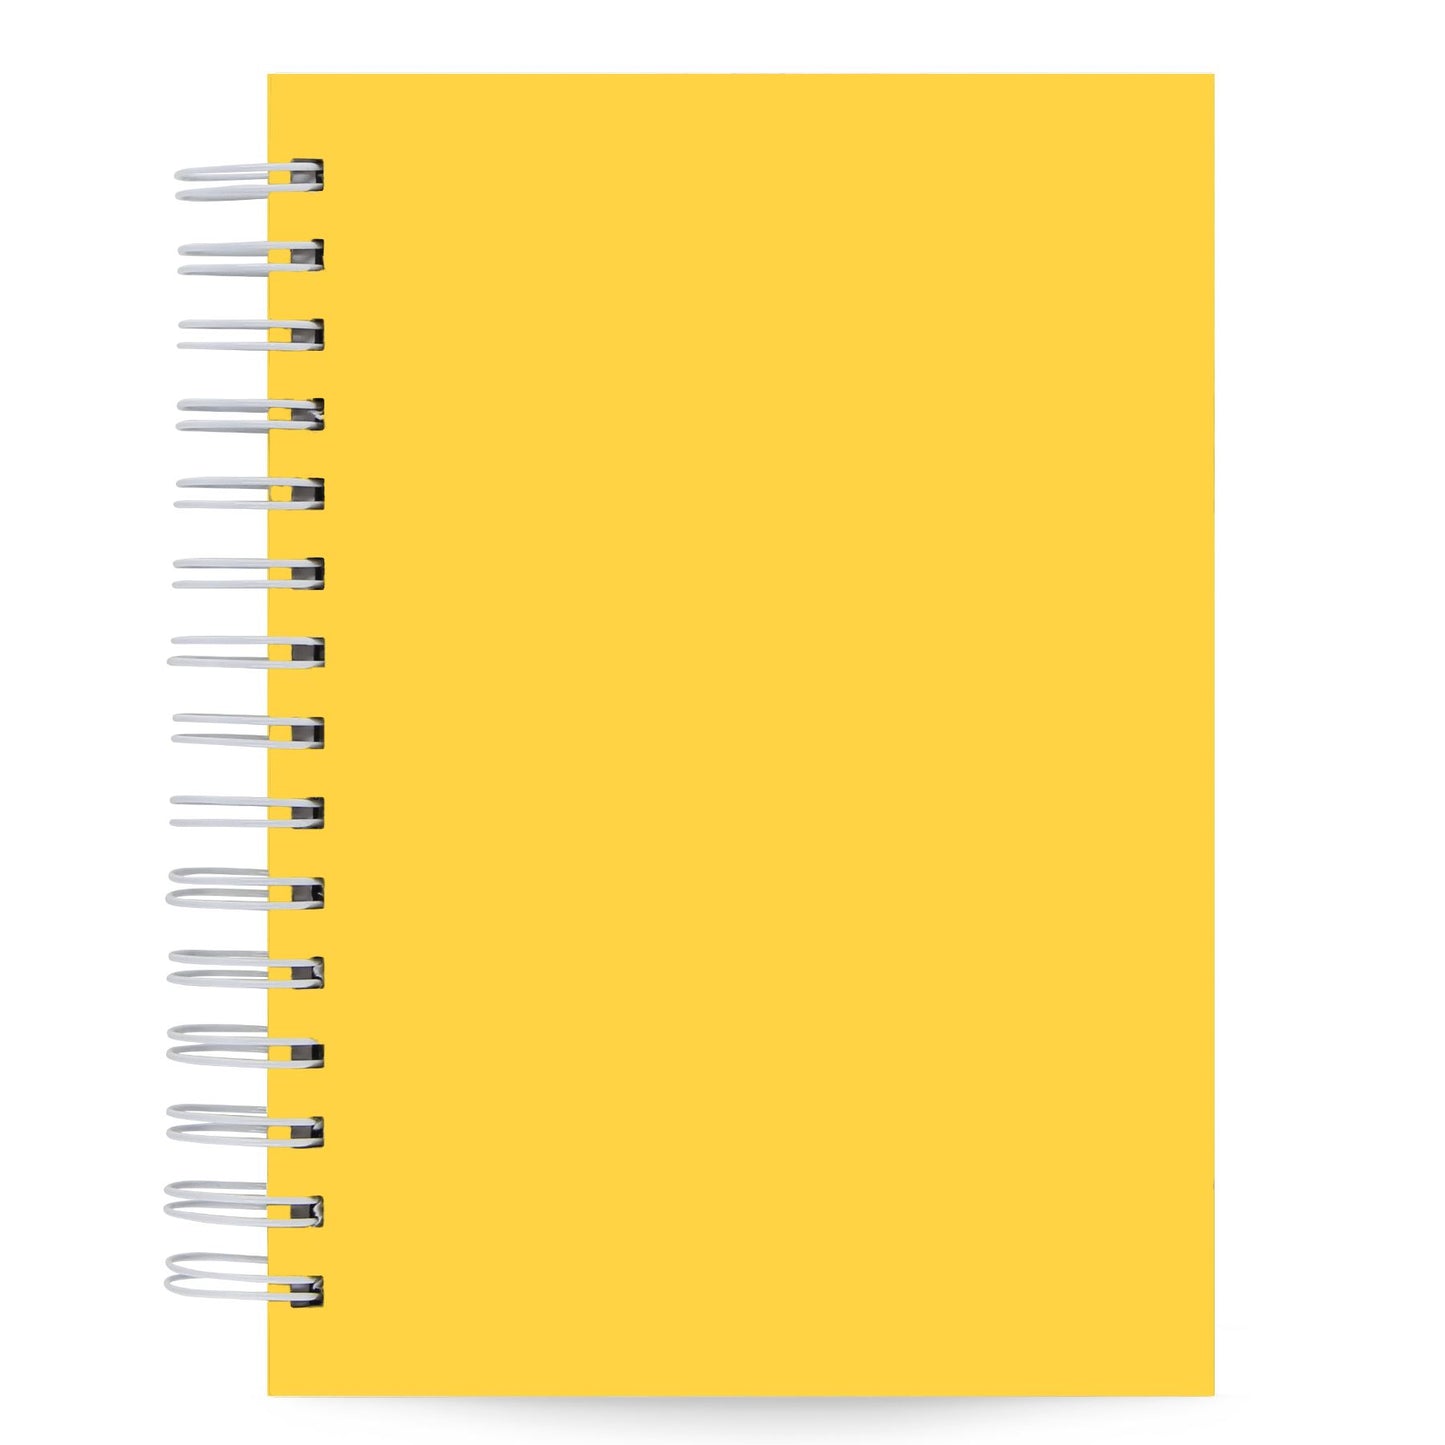 Caderno Pautado Amarelo Capa Dura Toque Aveludado 125 Fls 90g A5